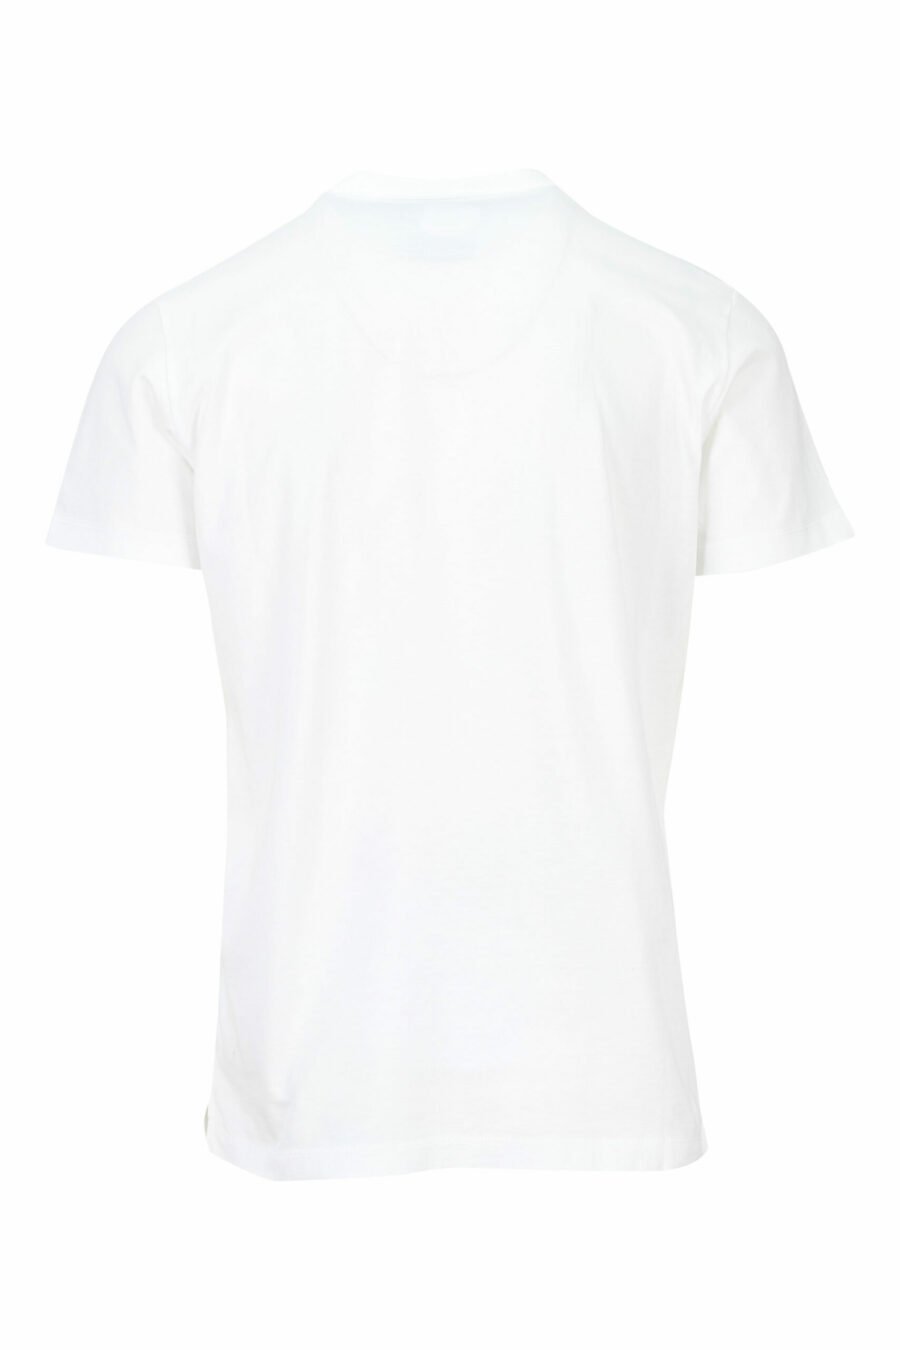 Weißes T-Shirt mit blauem "College"-Maxilogo - 8054148086442 1 skaliert